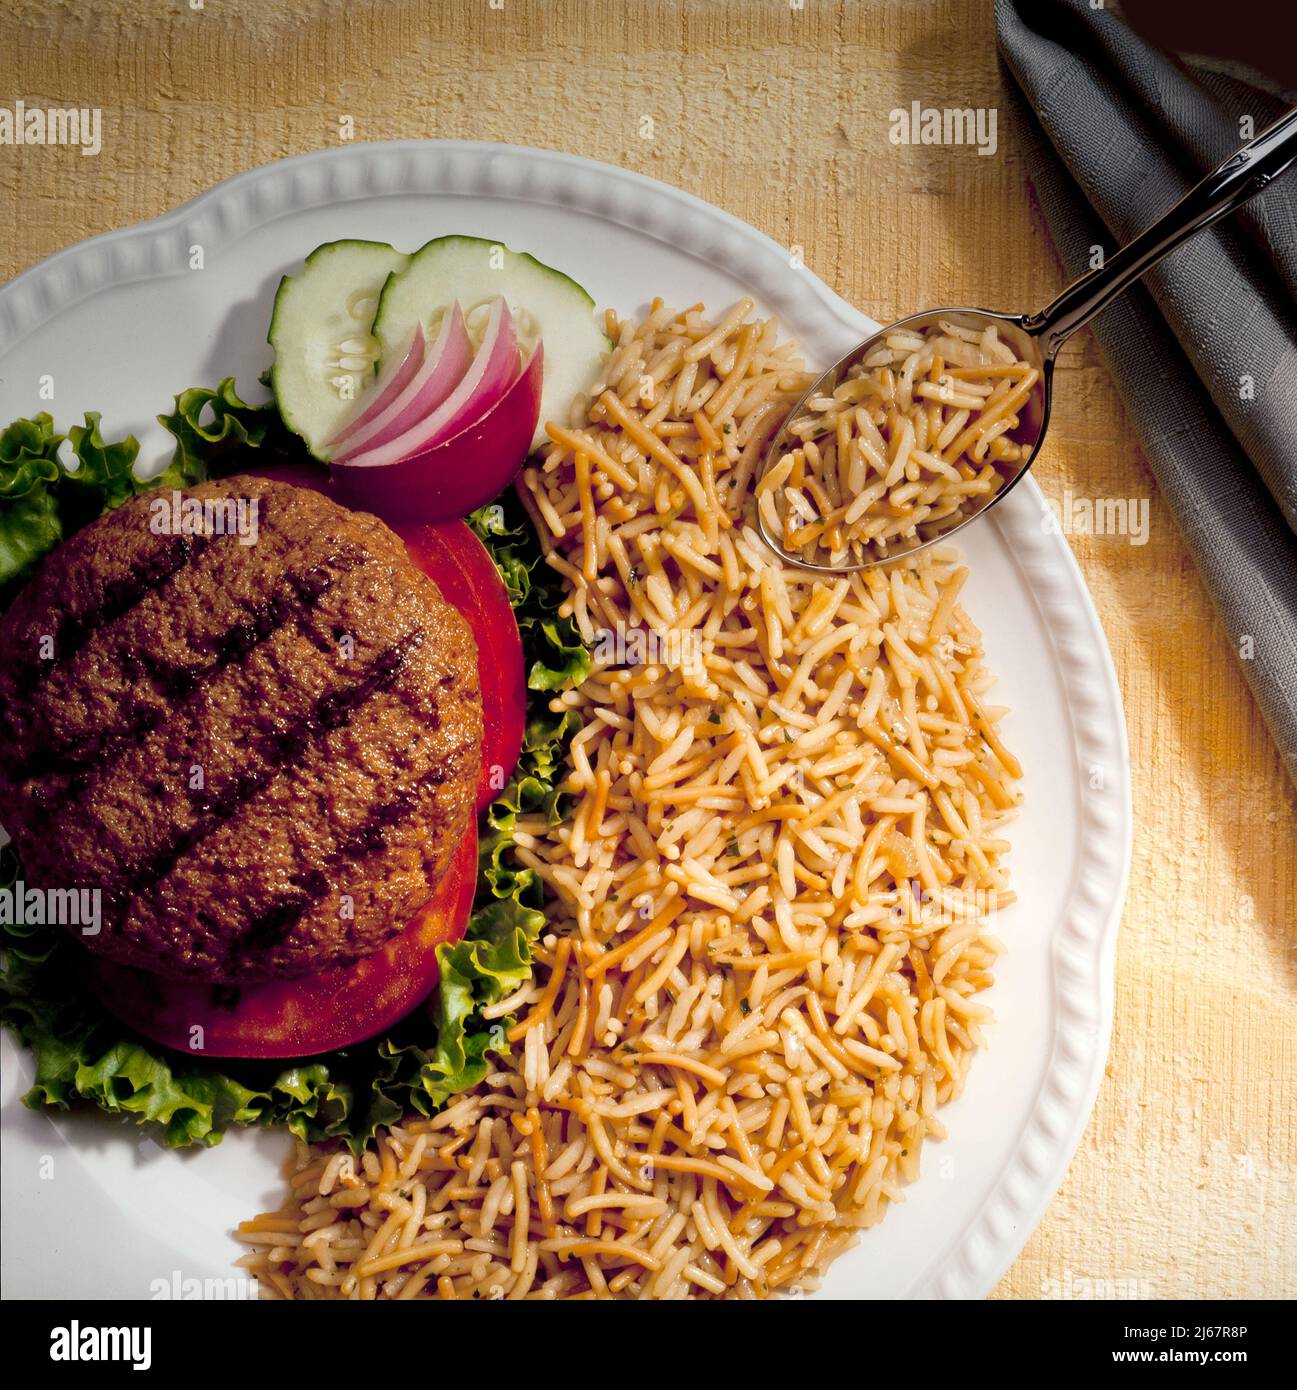 Gegrillter Burger und Reis Stockfoto